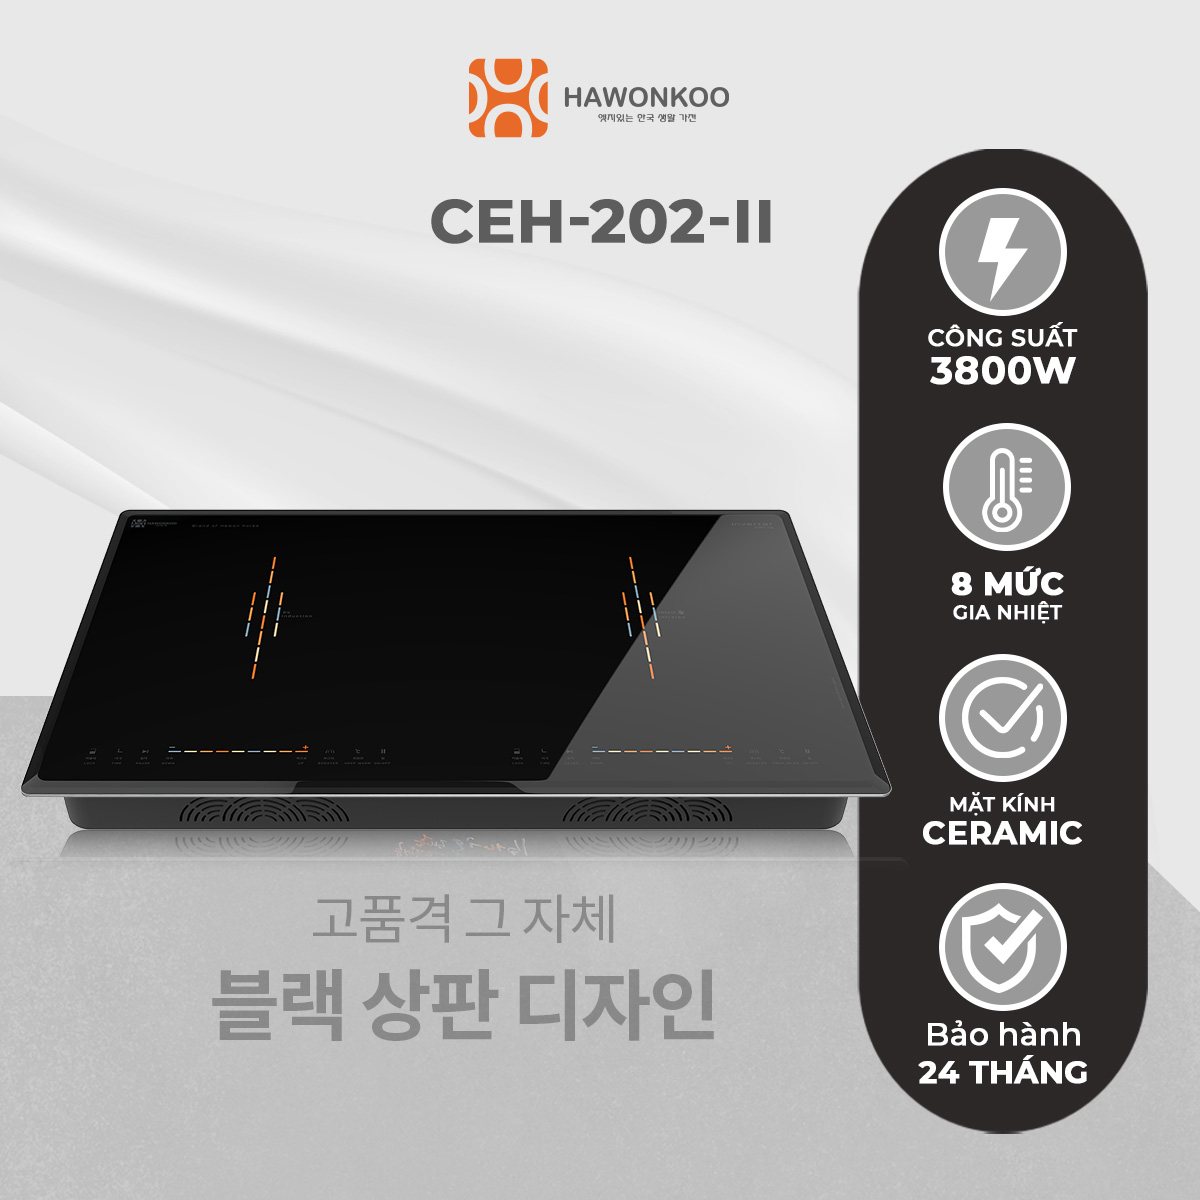 Bếp Điện Từ Đôi HAWONKOO CEH-202-II Inverter 4000W Hàng Chính Hãng Bảo Hành 2 Năm - Thương Hiệu Hàn Quốc